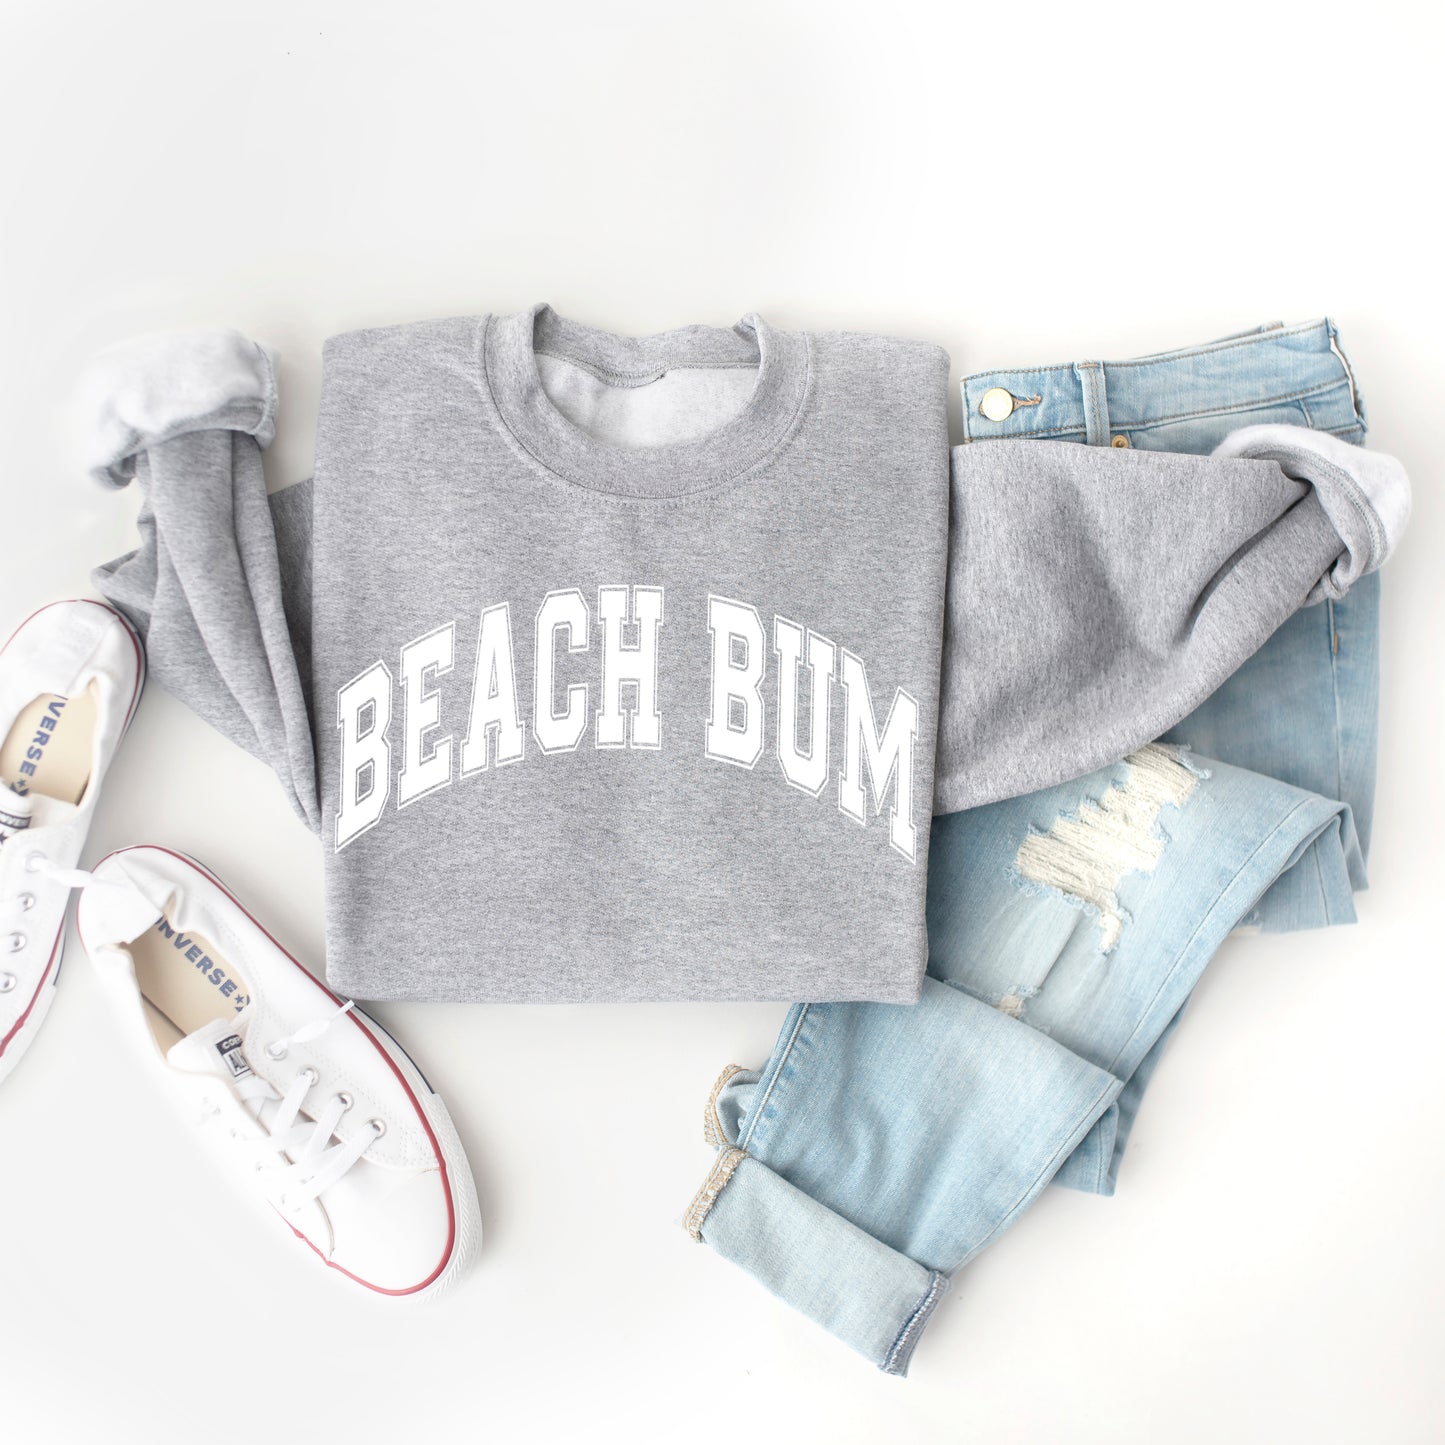 Varsity Beach Bum | Sweatshirt